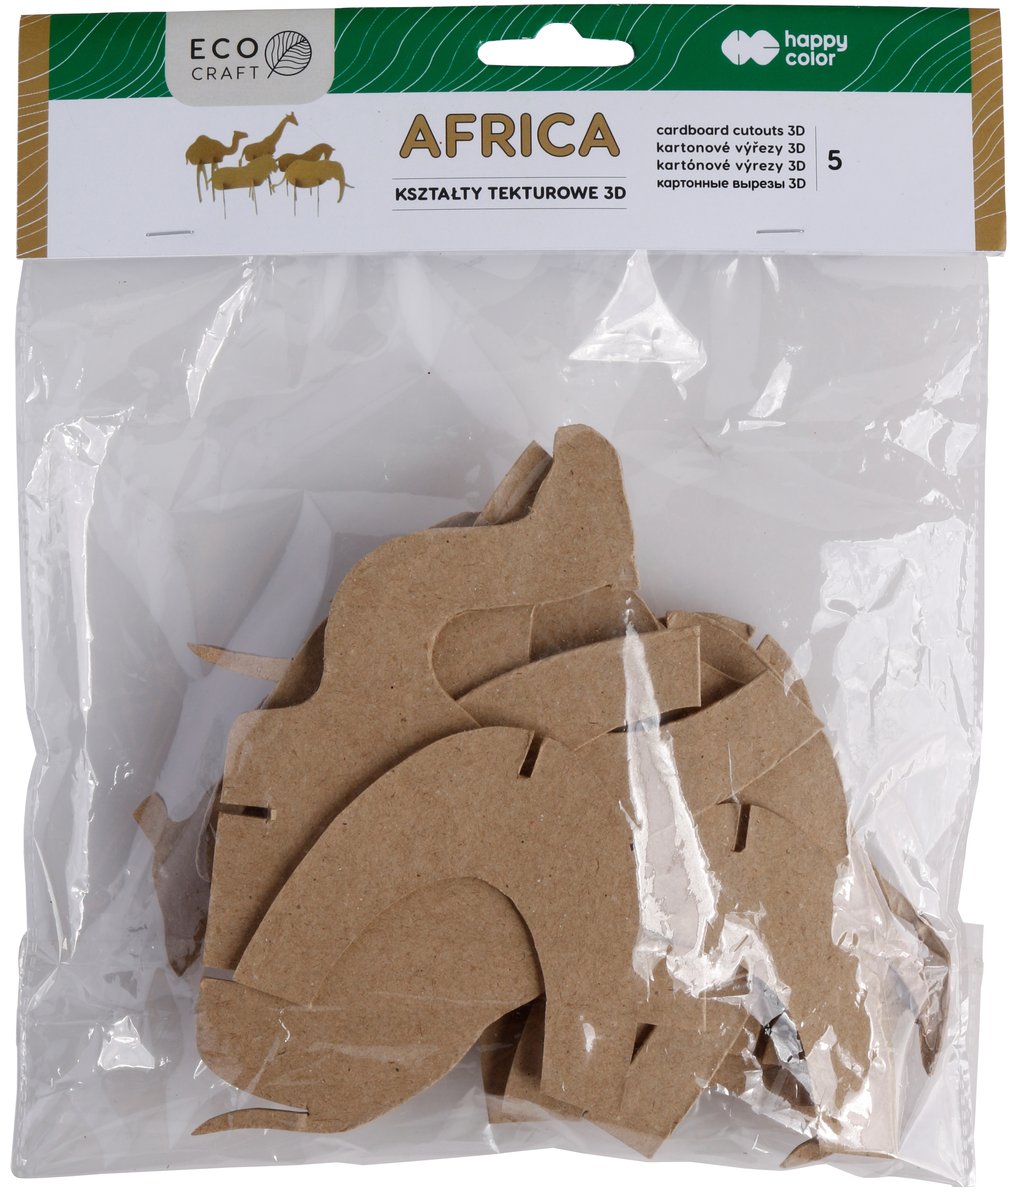 GDD Zestaw kształtów tekturowych 3D Africa 5szt